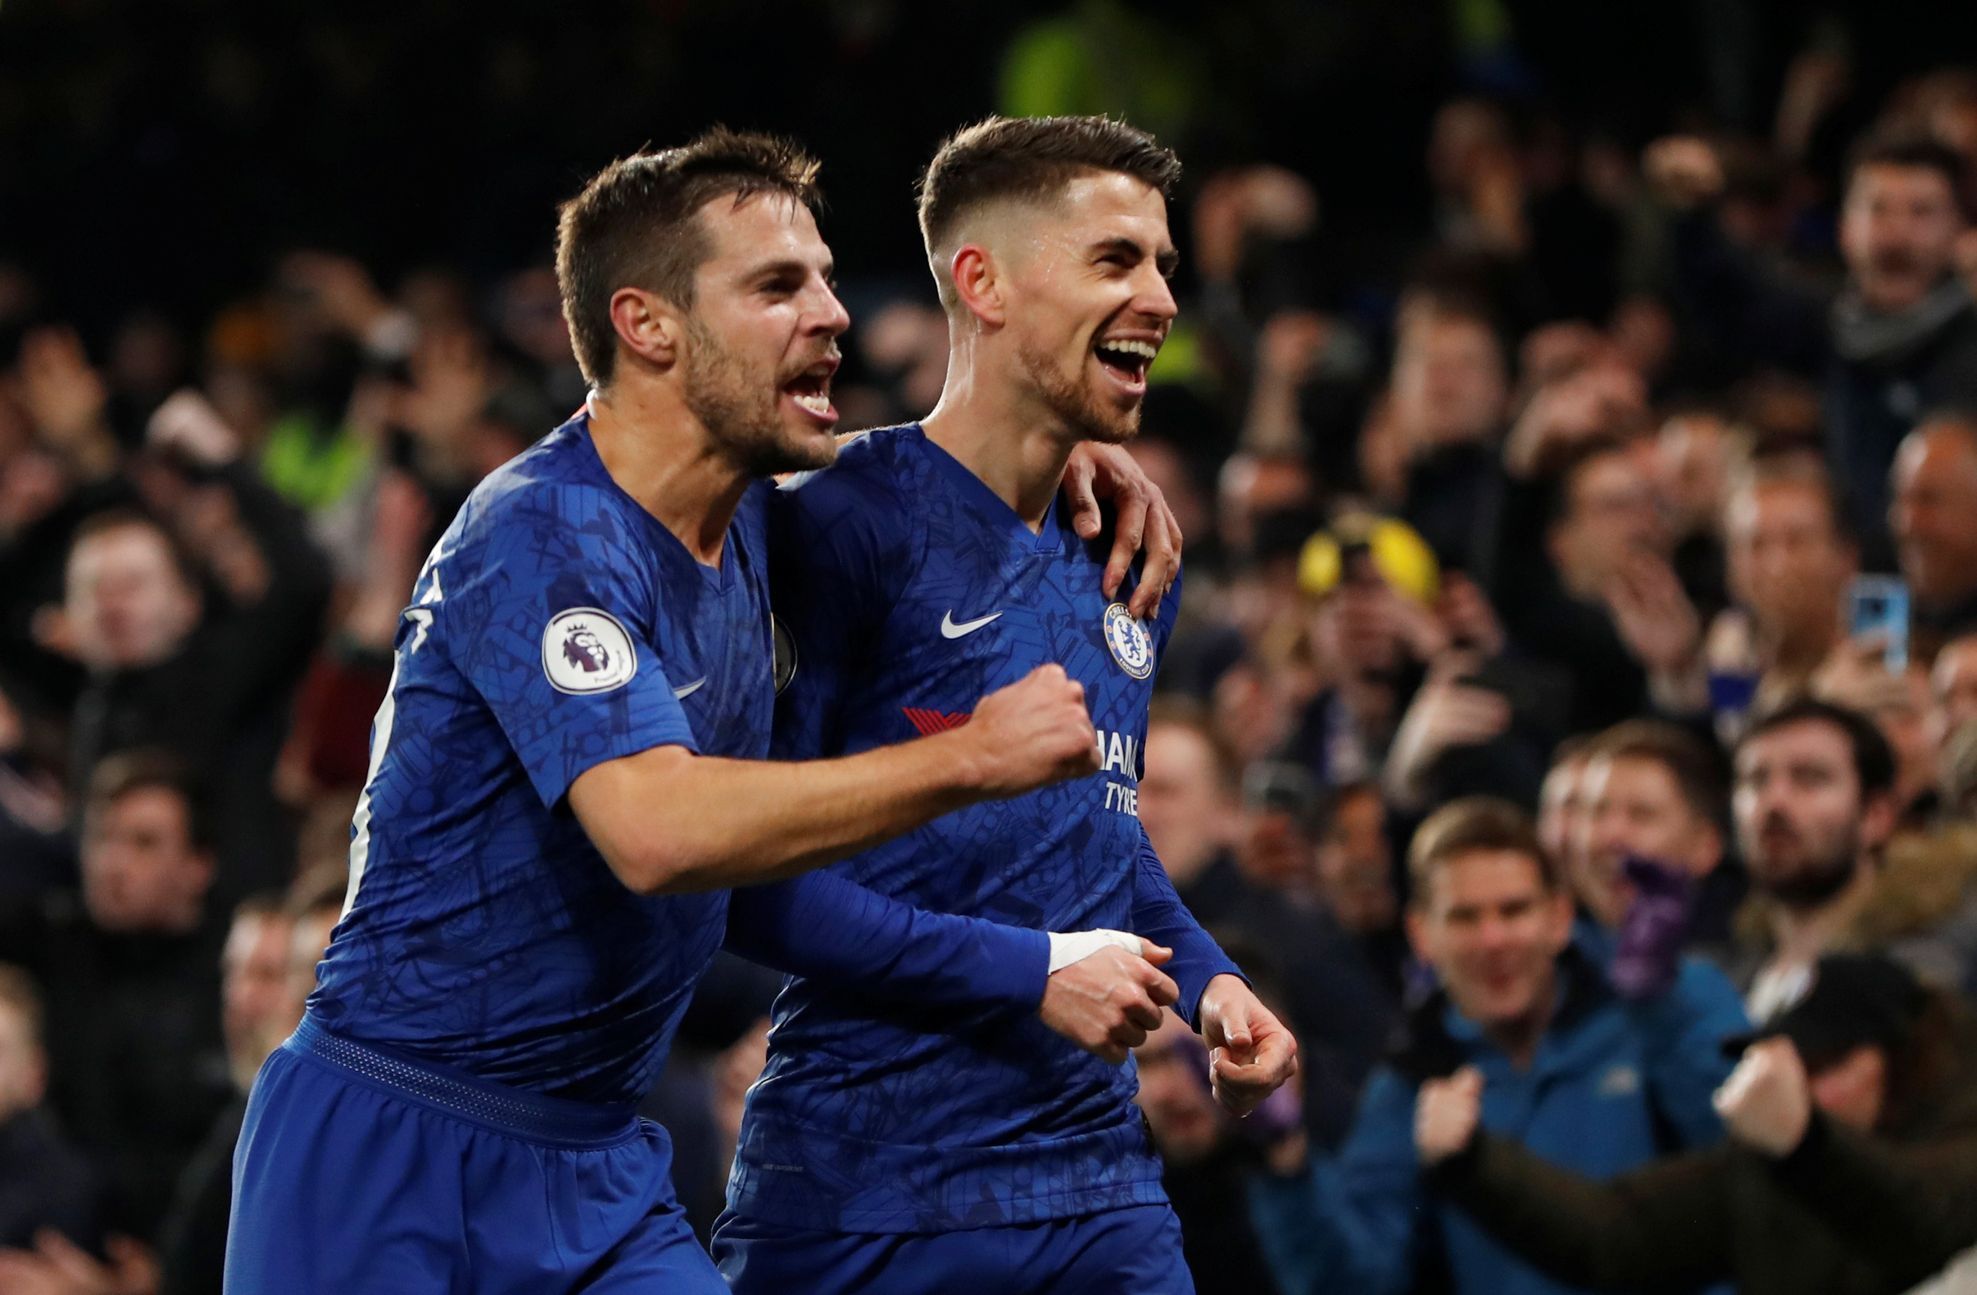 Anglická Premier League 2019/20, Chelsea - Arsenal: Jorginho (vpravo) a Cesar Azpilicueta slaví gól na 1:0